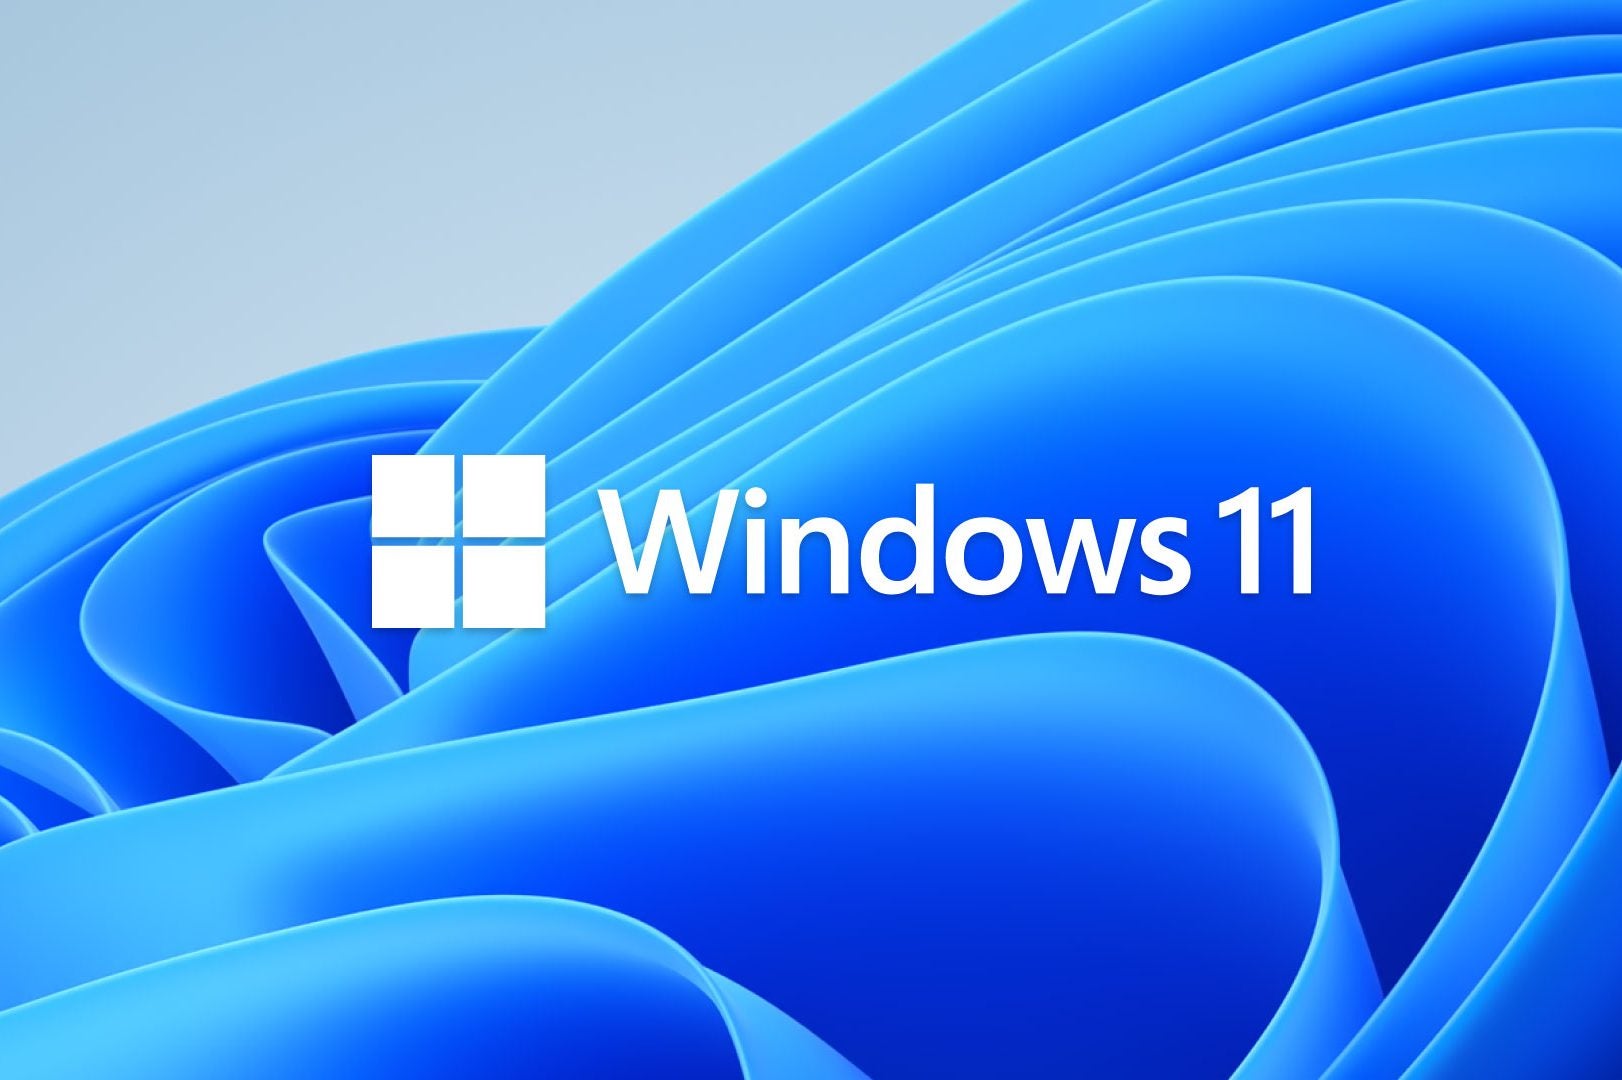 download windows 11 free full version 64 bit